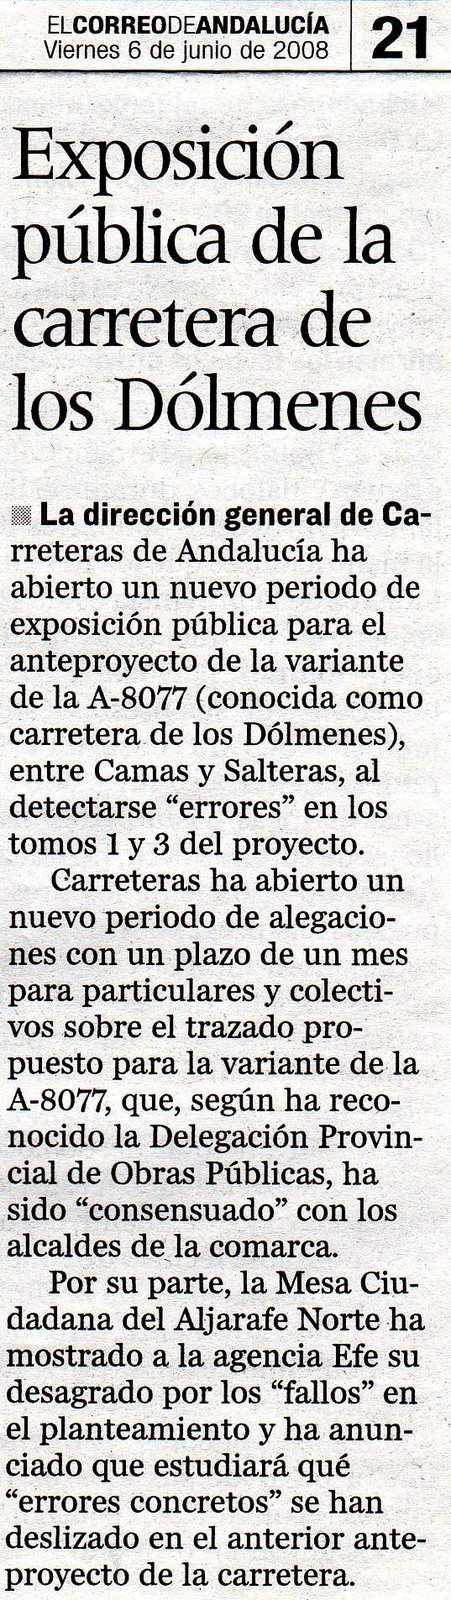 [2008+06+06+CORREO+ANDALUCÃ A+EXPOSICIÃ“N+PÃšBLICA+DE+LA+CARRETERA+DE+LOS+DÃ“LMENES.jpg]